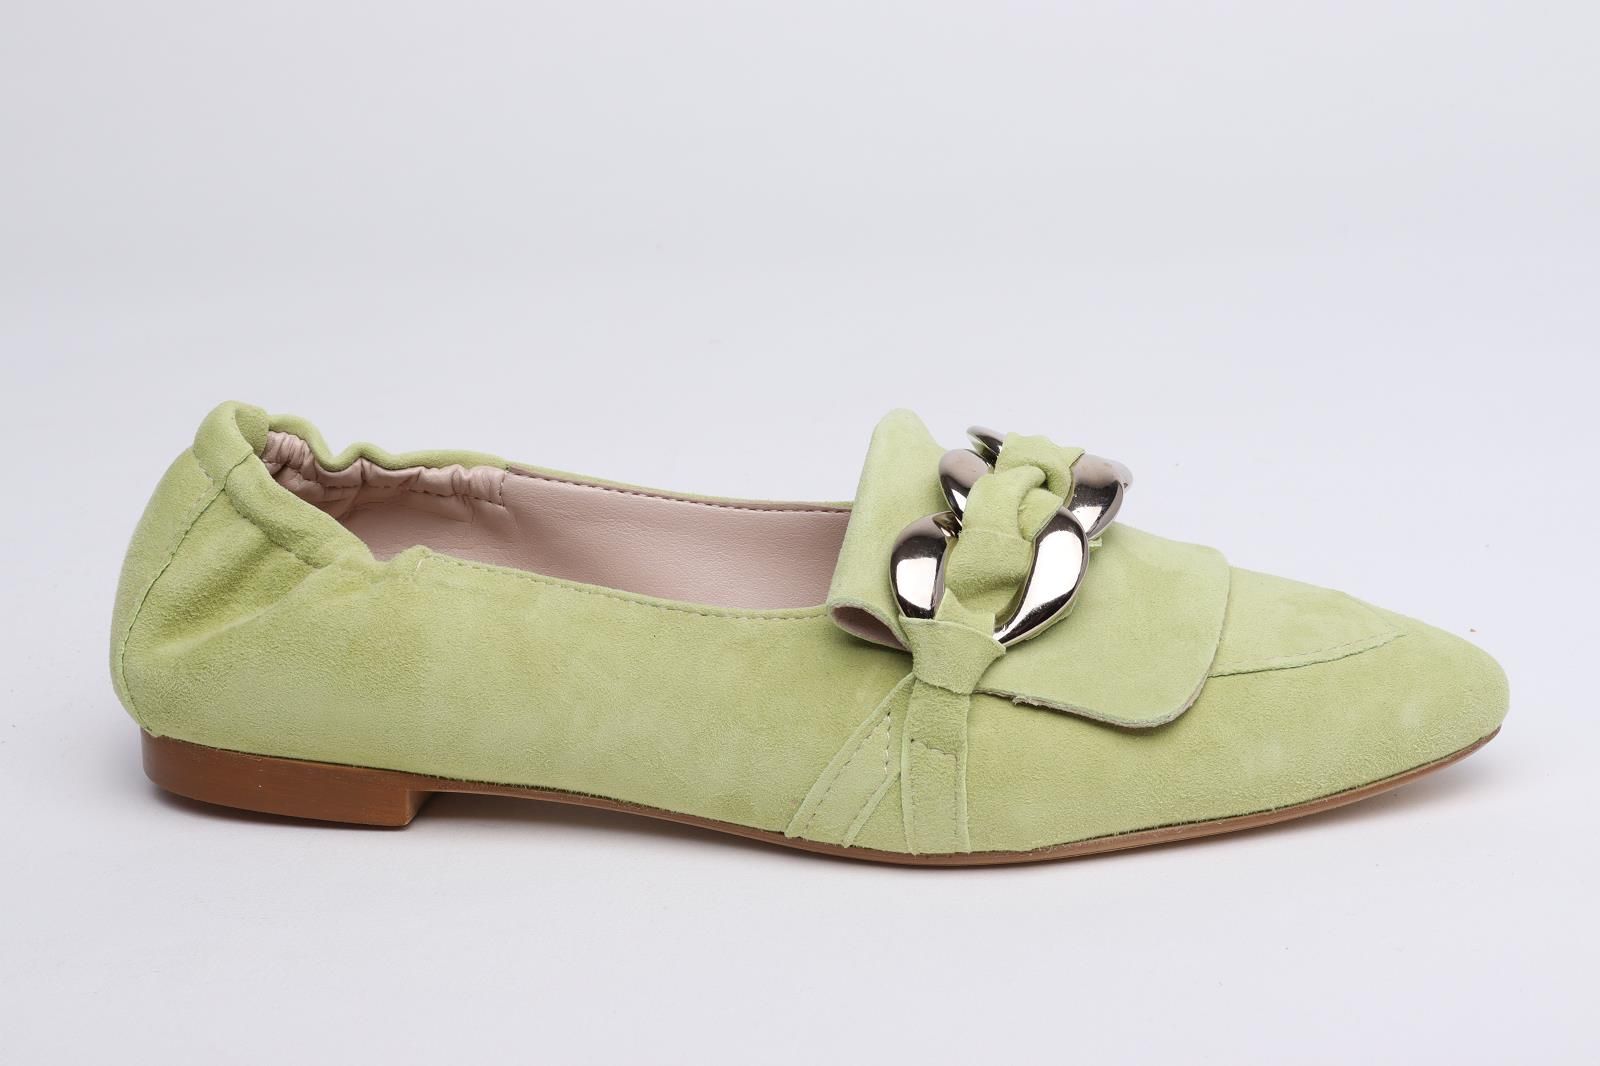 Gianluca Pisati dames mocassin / loafer in groen suede leer plat.